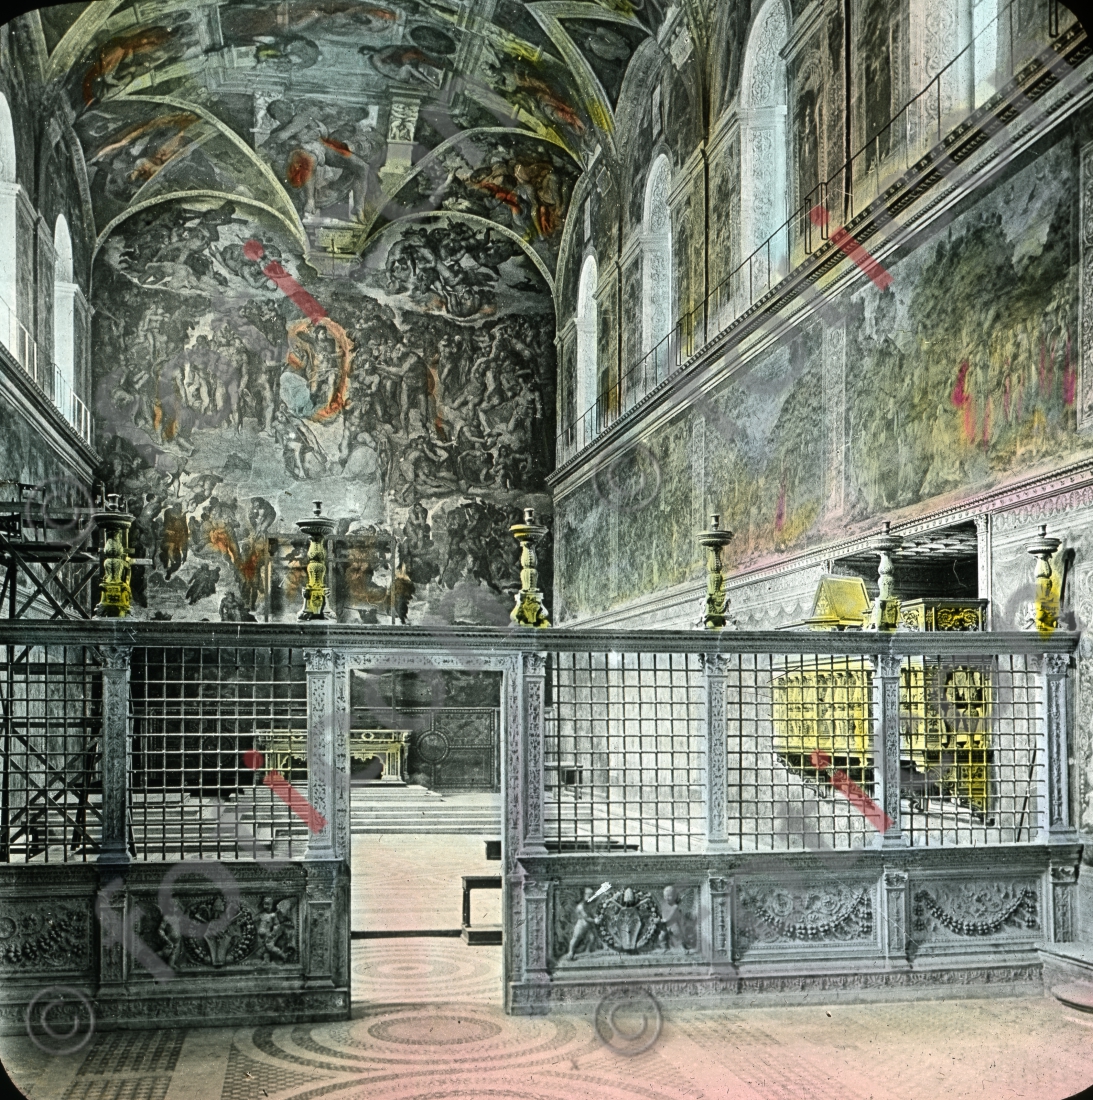 Sixtinische Kapelle | Sistine Chapel - Foto foticon-simon-147-019.jpg | foticon.de - Bilddatenbank für Motive aus Geschichte und Kultur